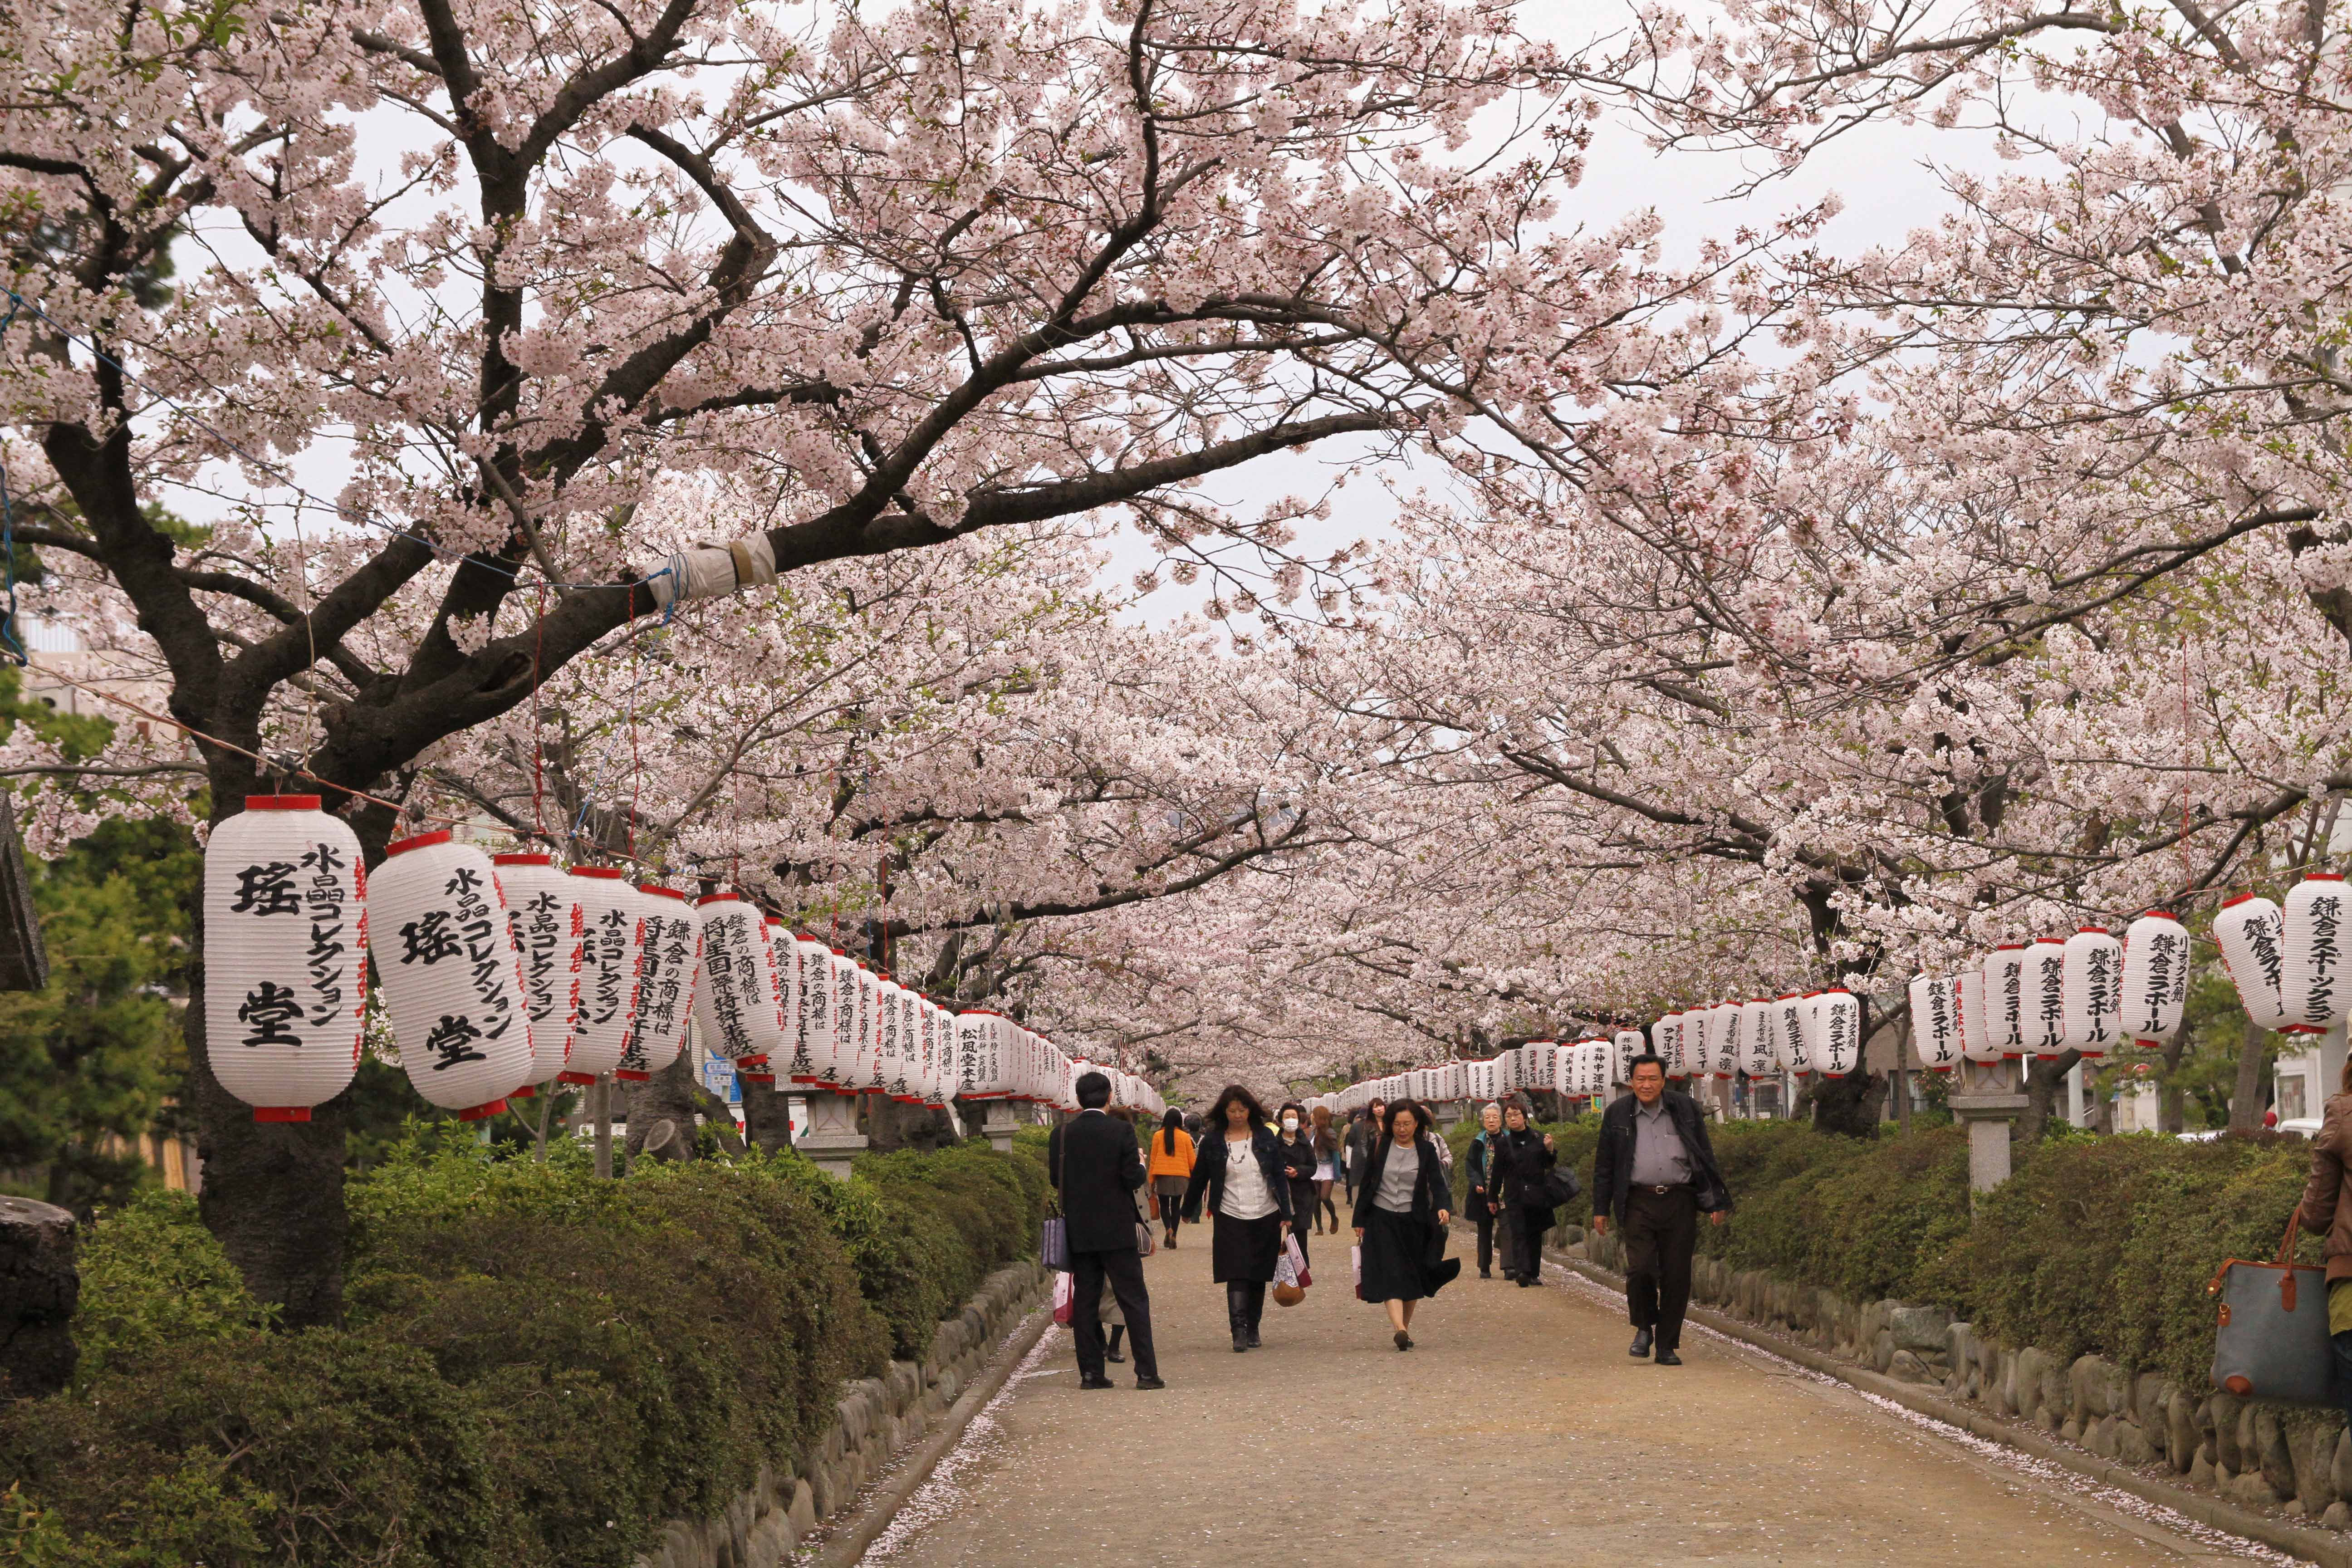 Enveloped by blossoms, Kamarkura, cherry blossoms